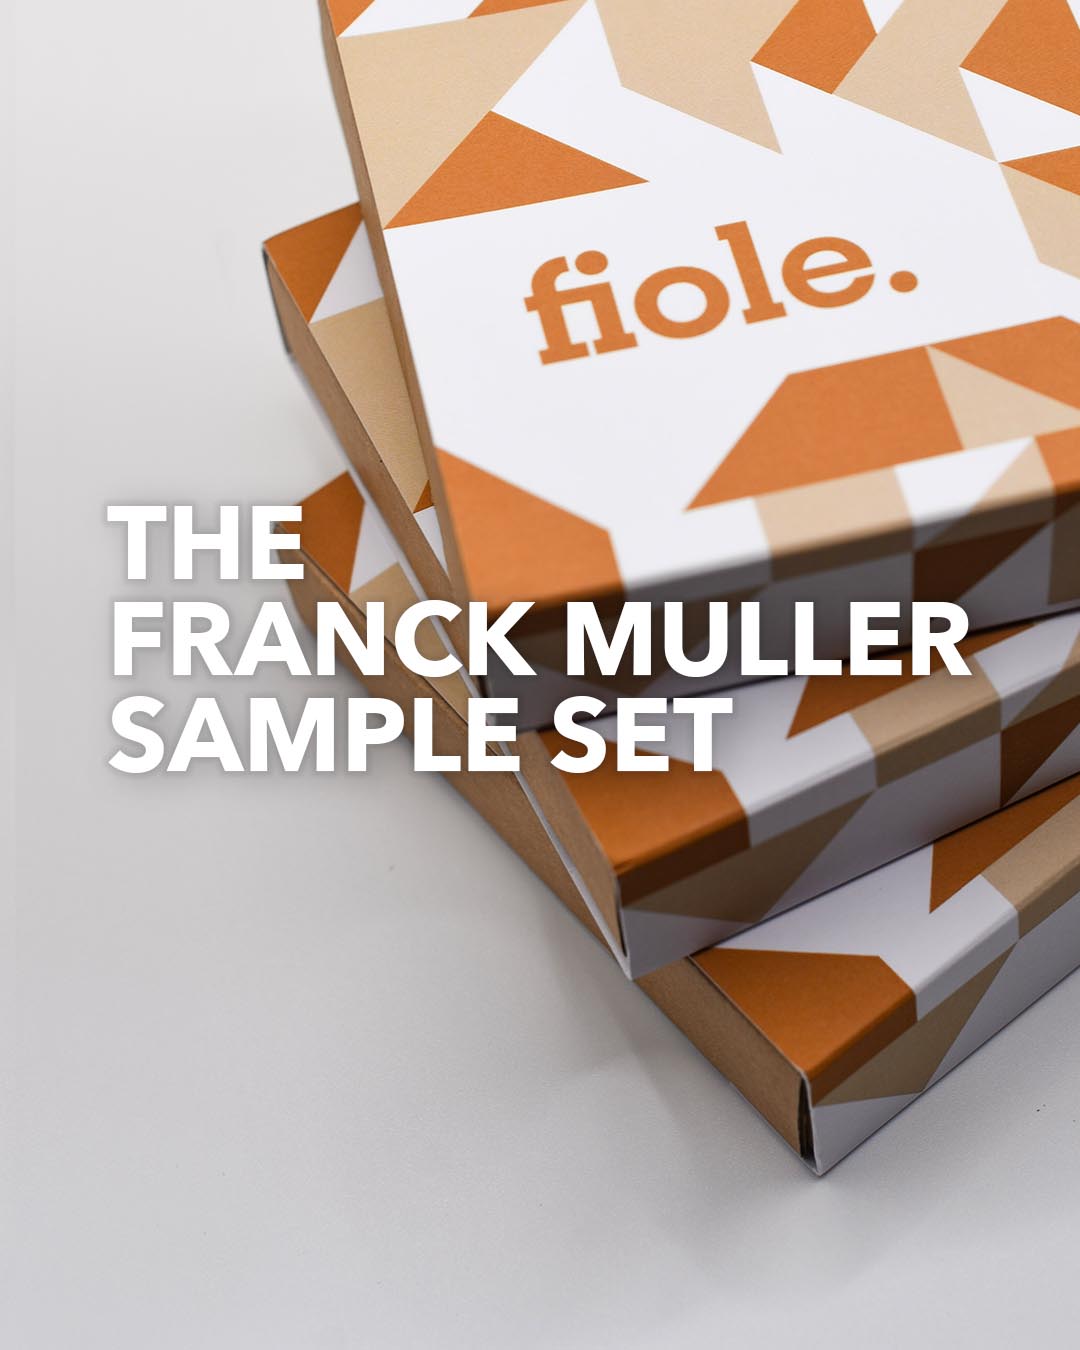 Franck Muller Sample Set